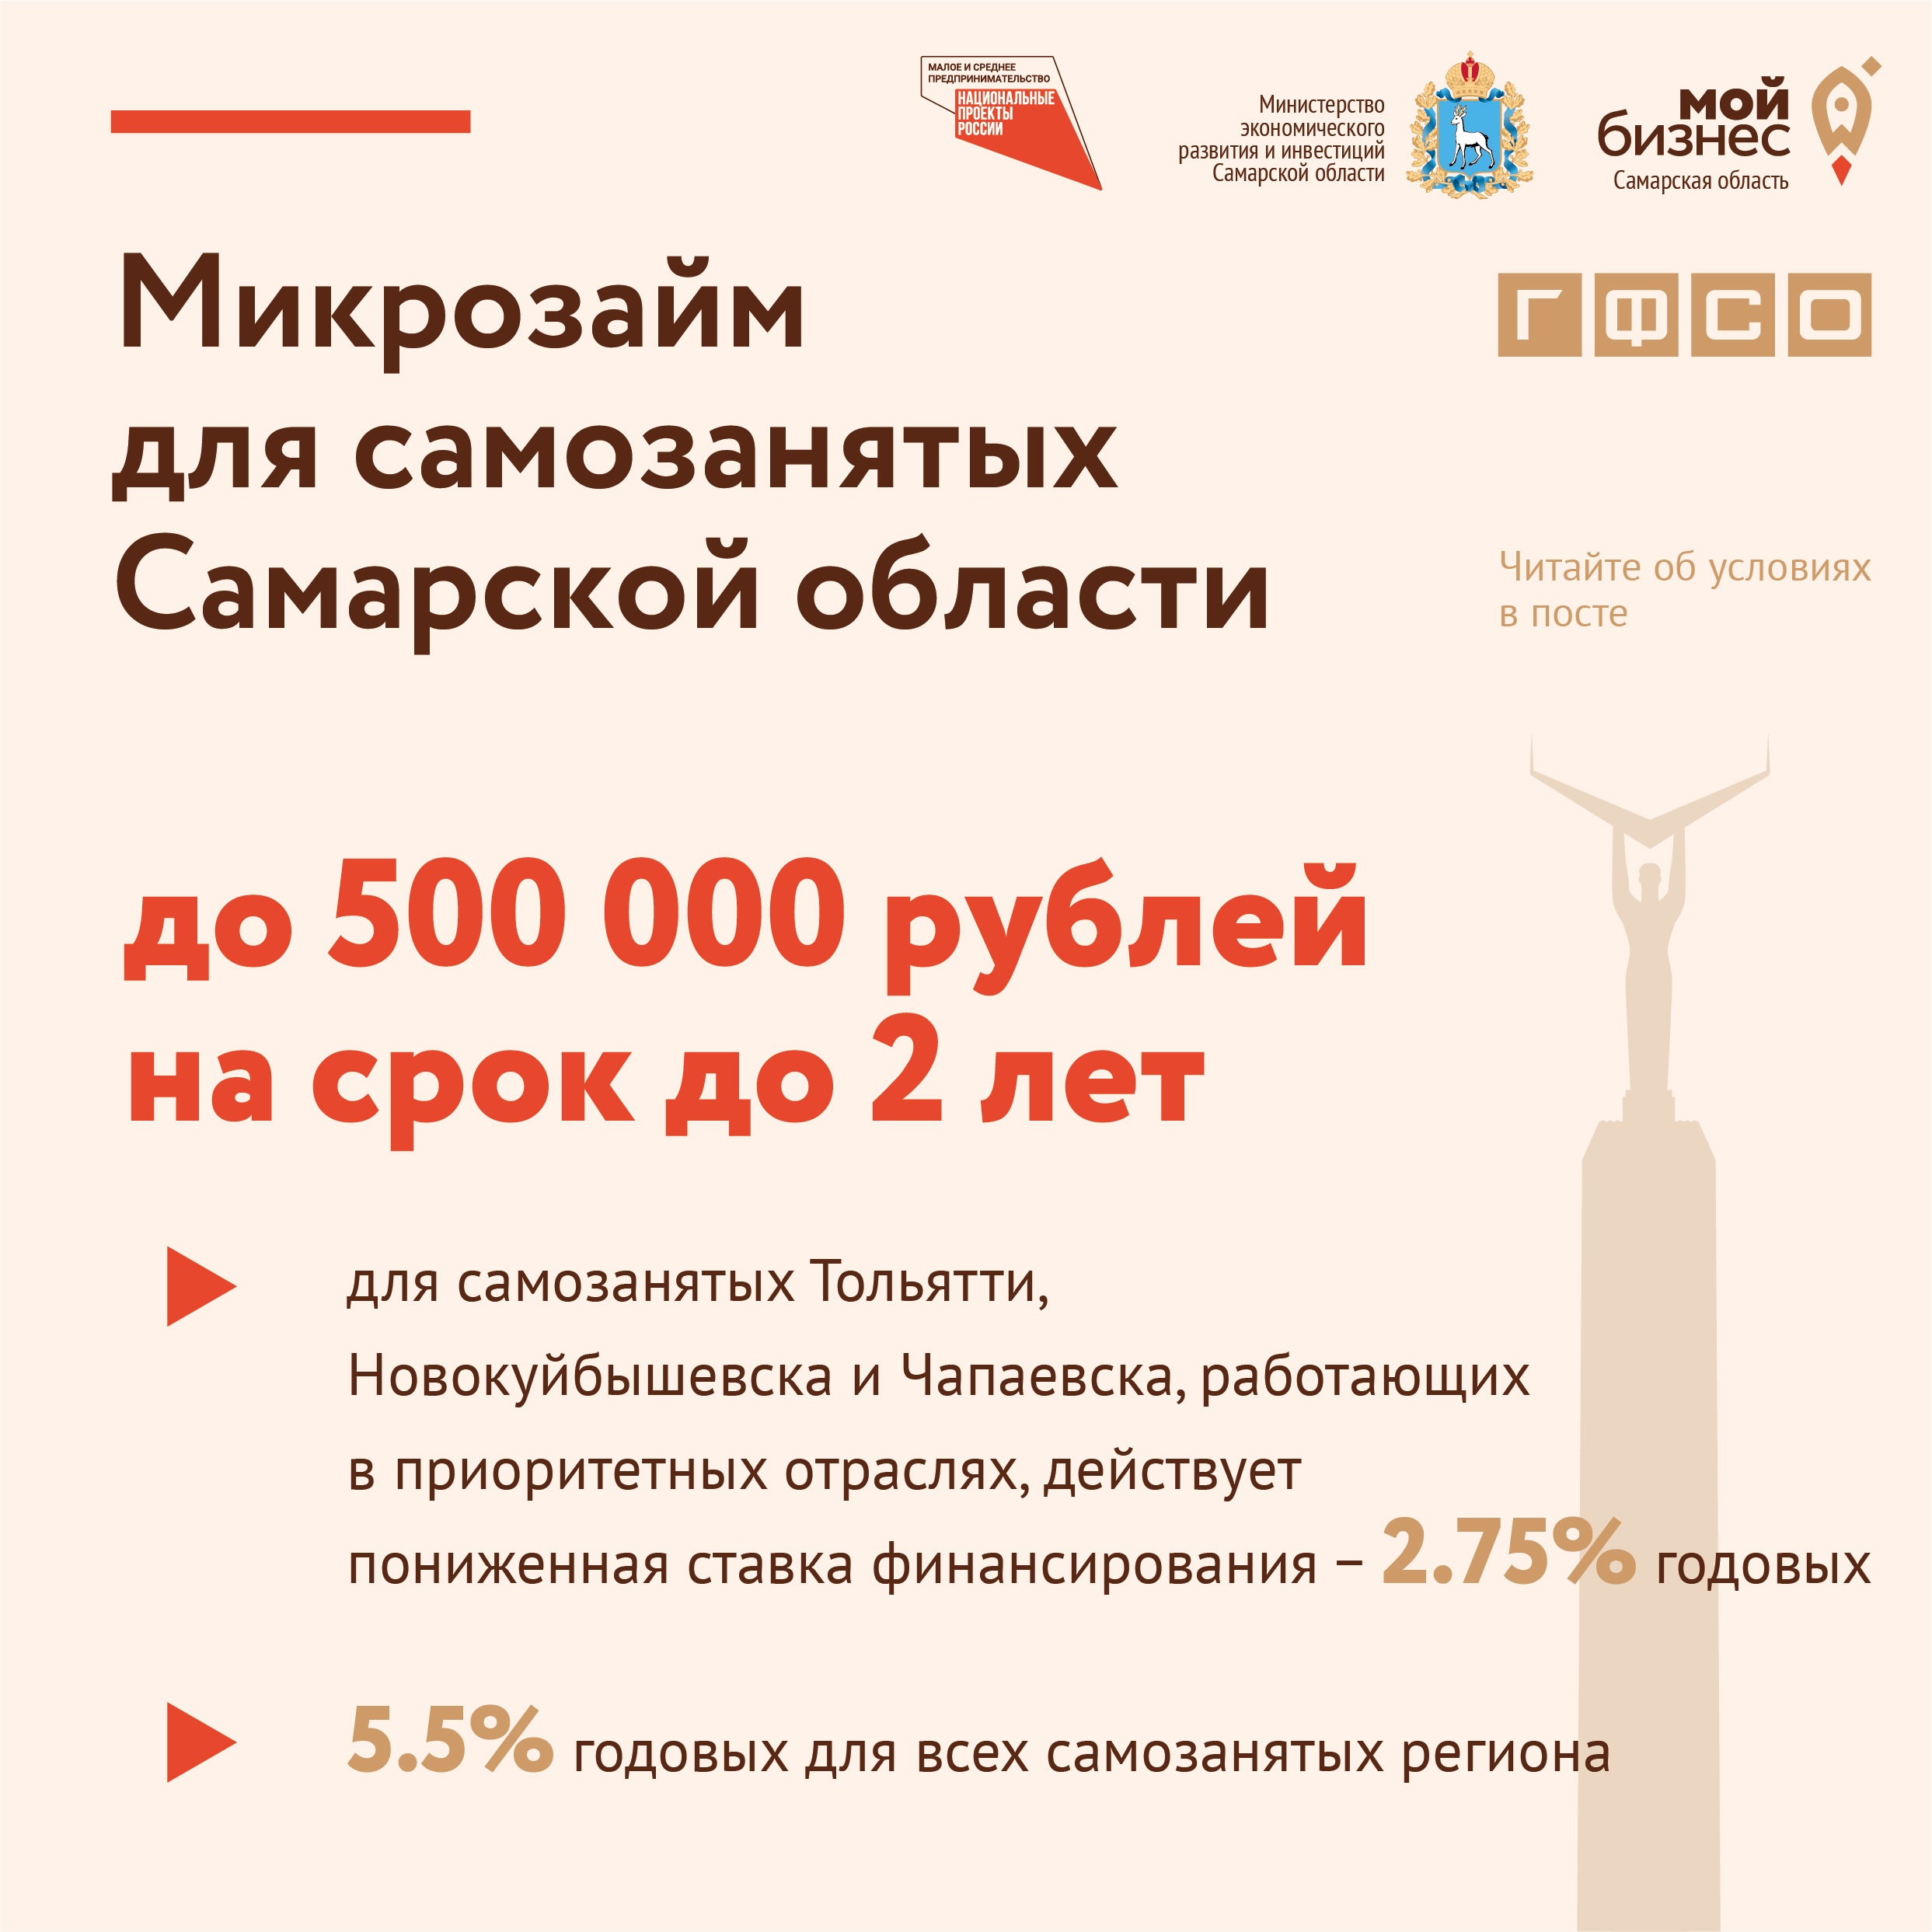 Микрозайм для самозанятых Самарской области до 500 тыс. рублей на срок до 2 лет